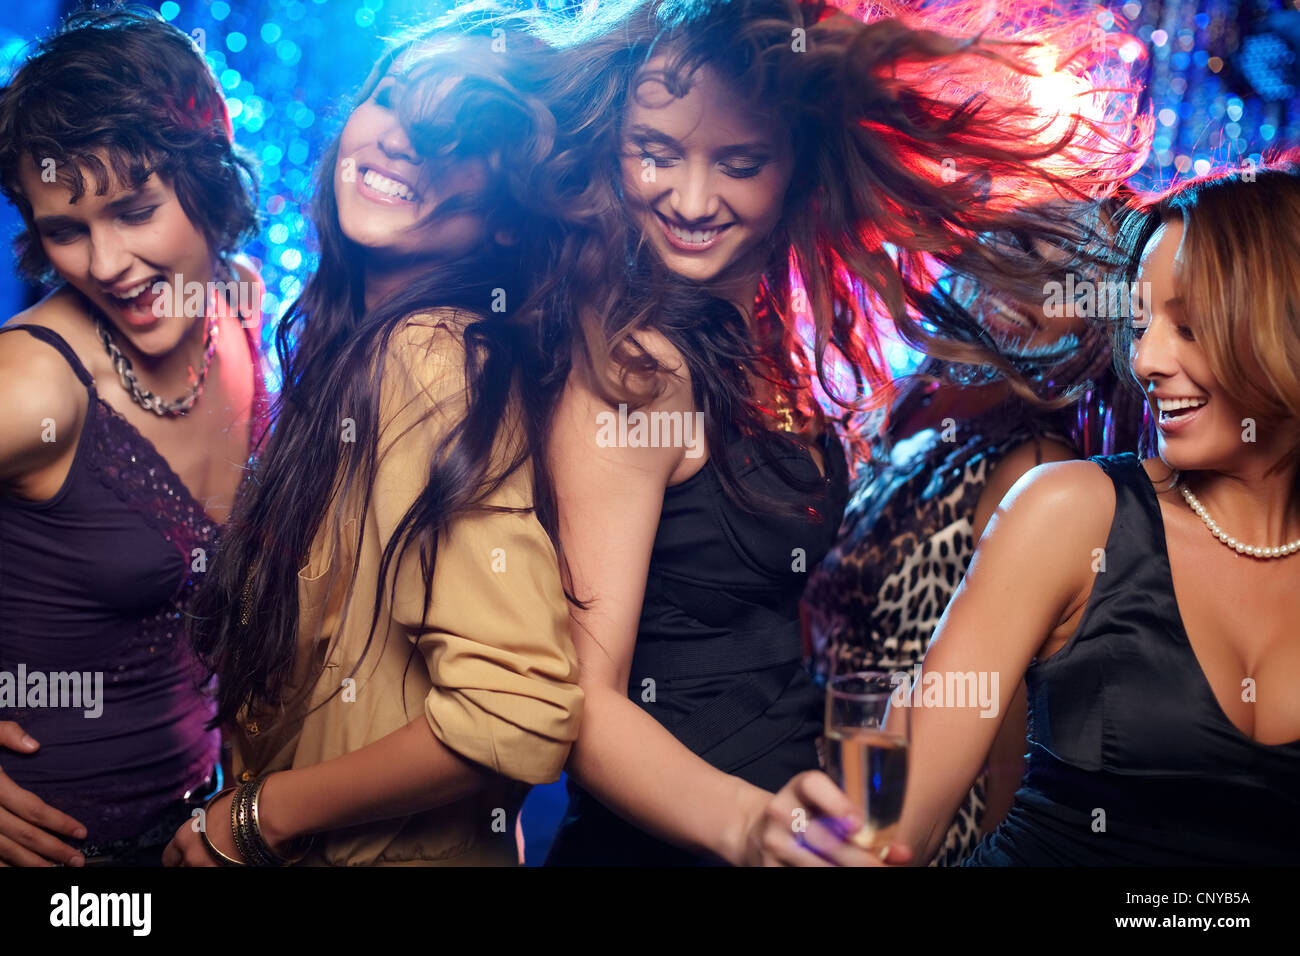 Young women having fun dancing at nightclub Stock Photo